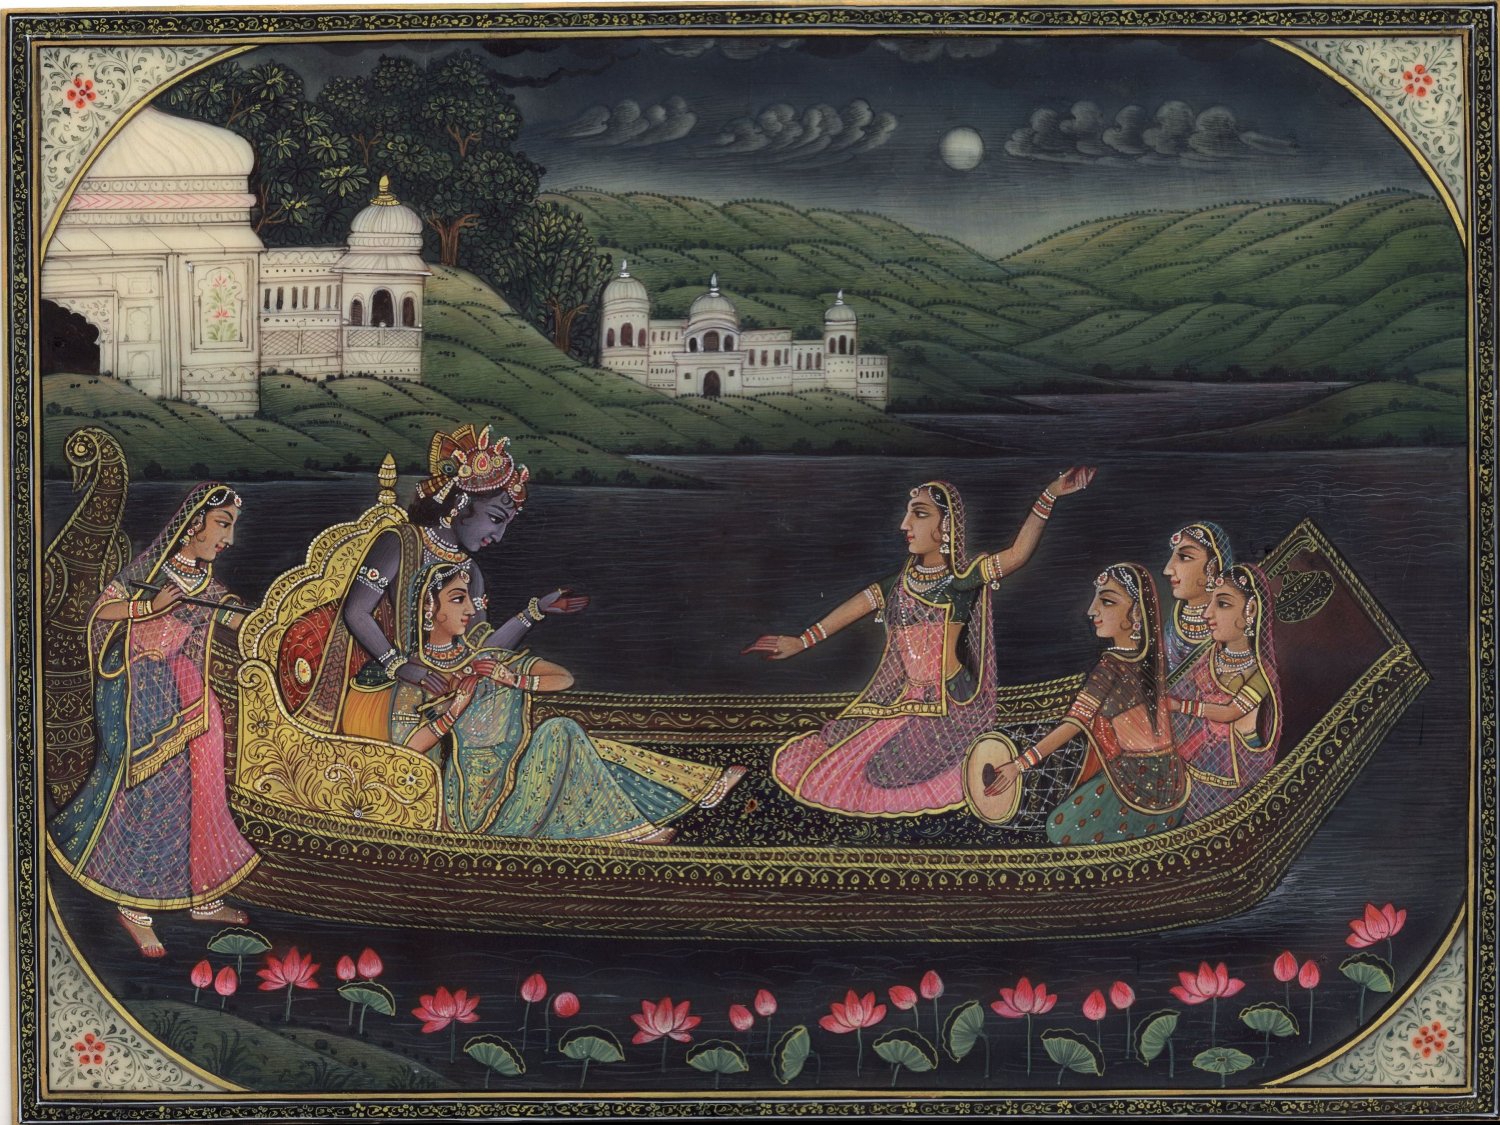 Krishna Radha Art Handpainted Hindu Folk Art Image Painting of Krishn and Gopis